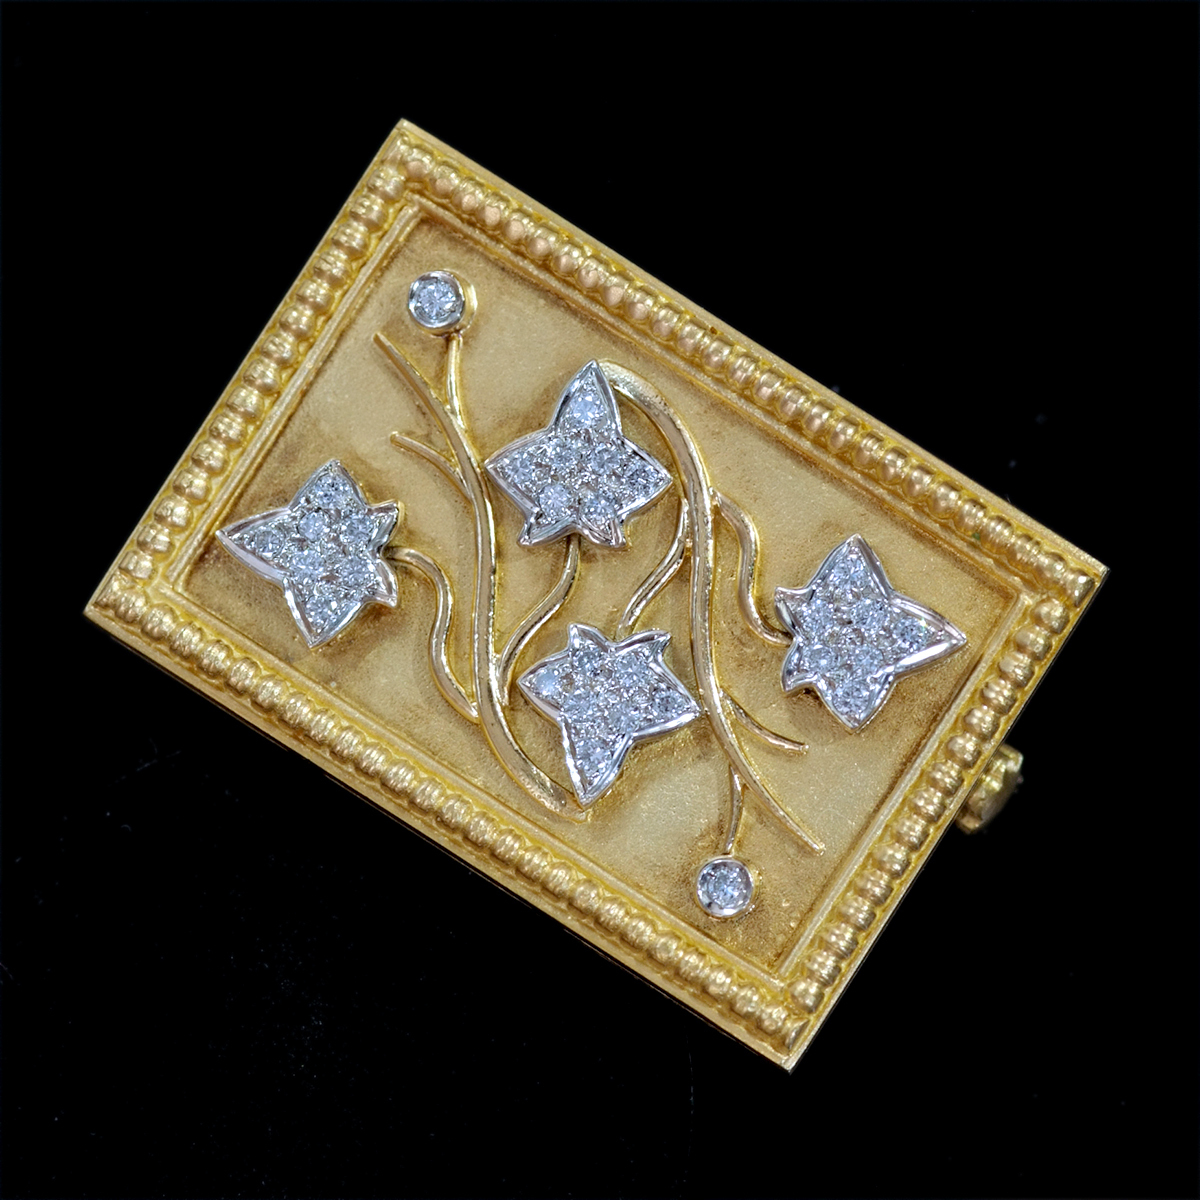 F0581-2 天然絶品ダイヤモンド 最高級18金無垢イタリア製ブローチ/ペンダントトップ 重量11.1g 幅20.0×28.5mm